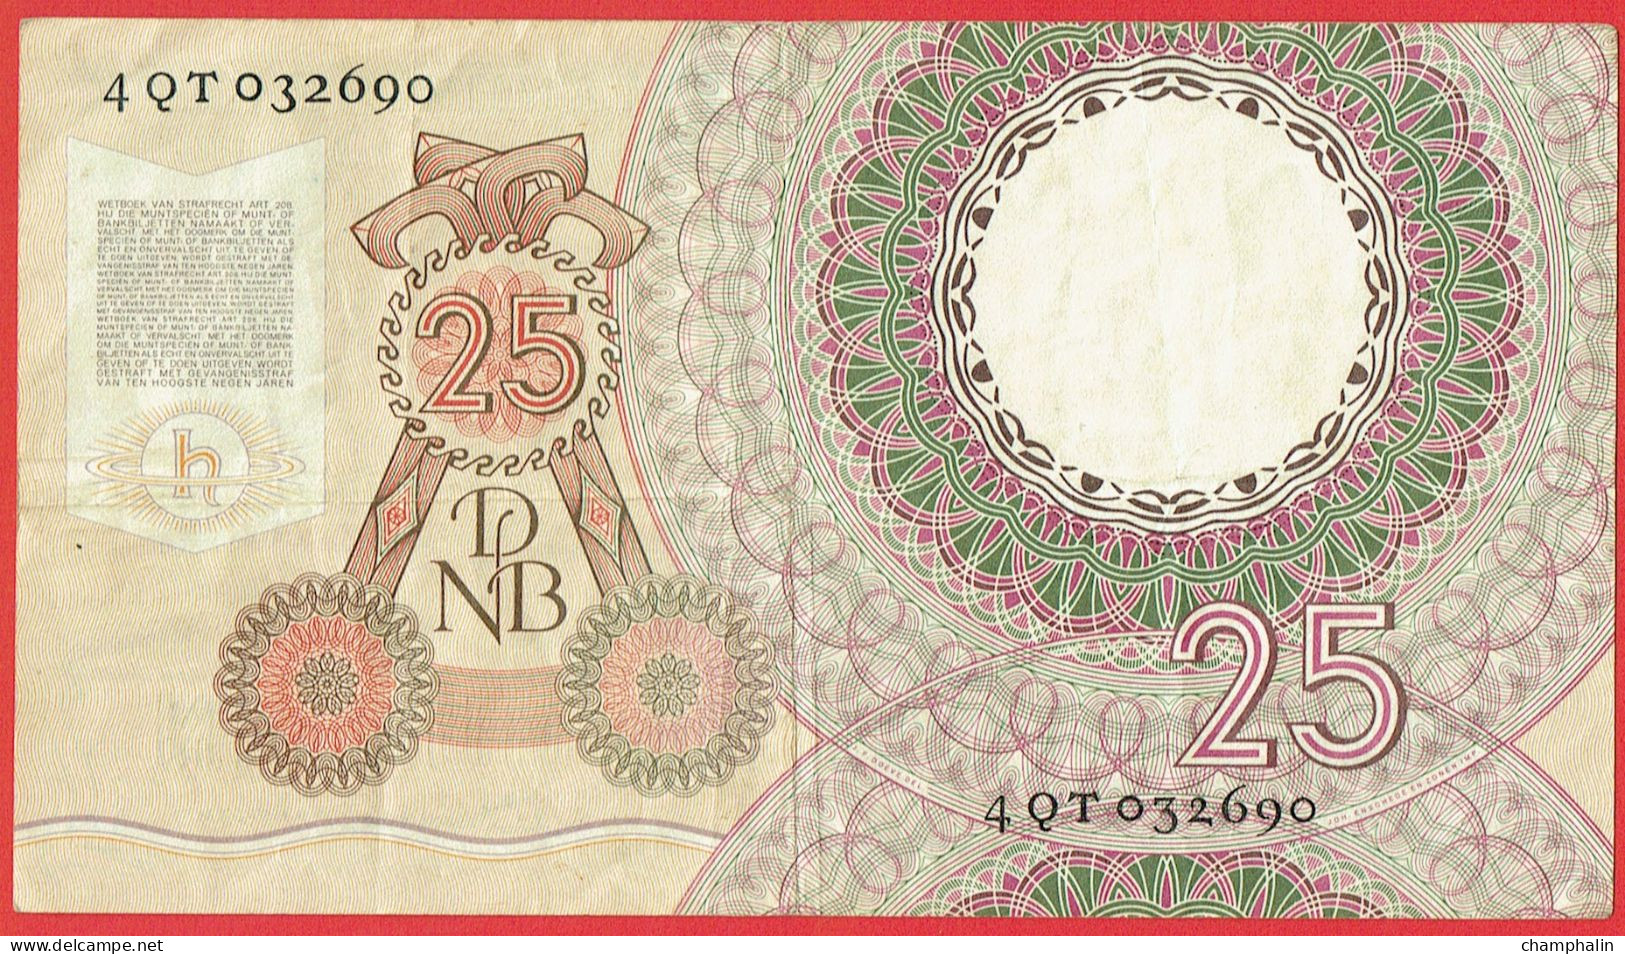 Pays-Bas - Billet De 25 Gulden - Christiaan Huygens - 10 Avril 1955 - P87 - 25 Gulden